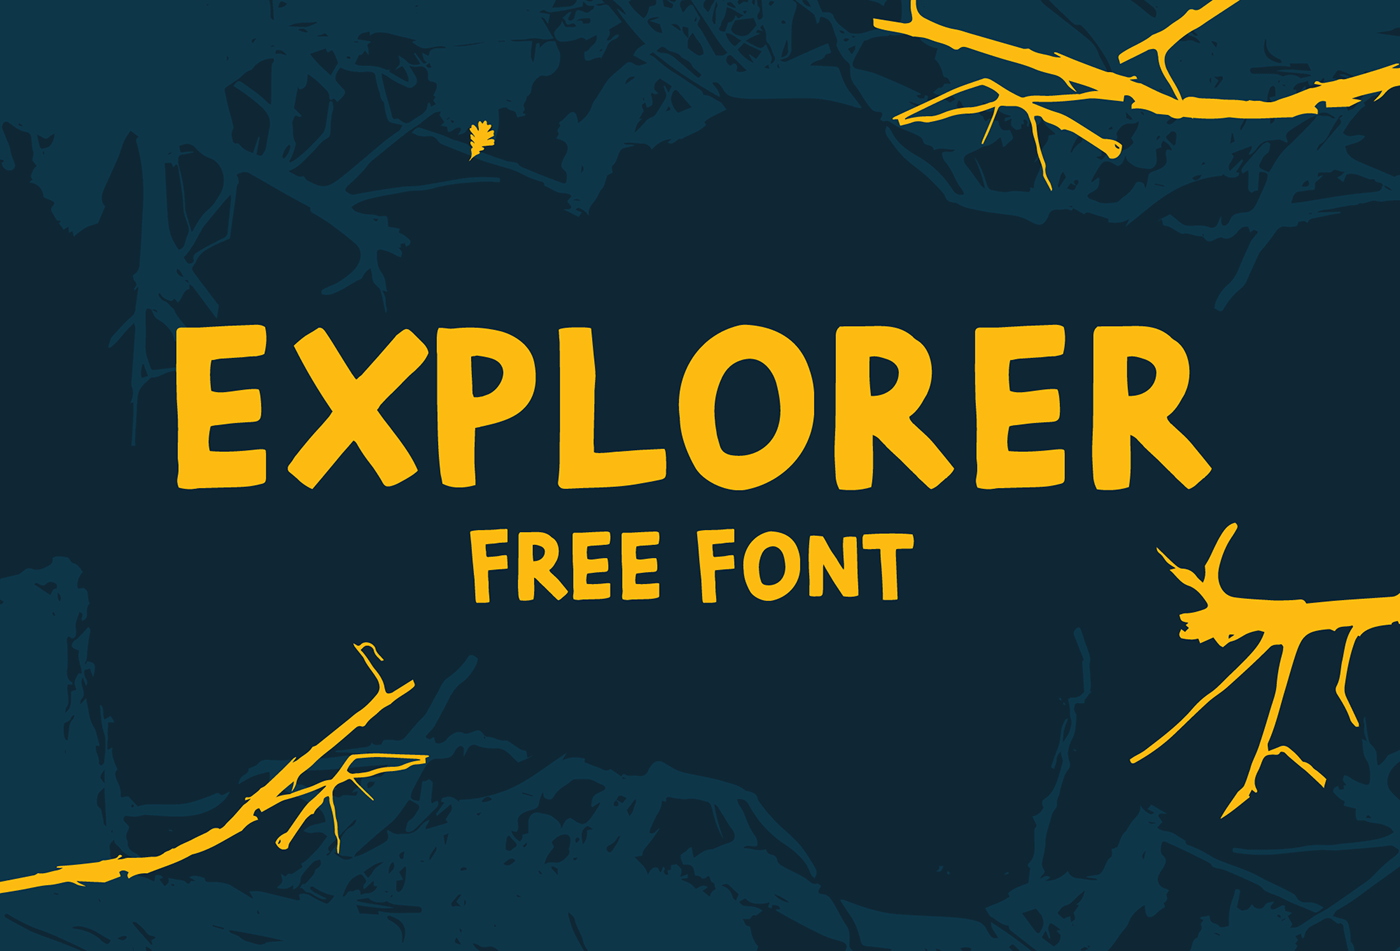 Free font free font freebie type brush Typeface bold handwritten handwriting